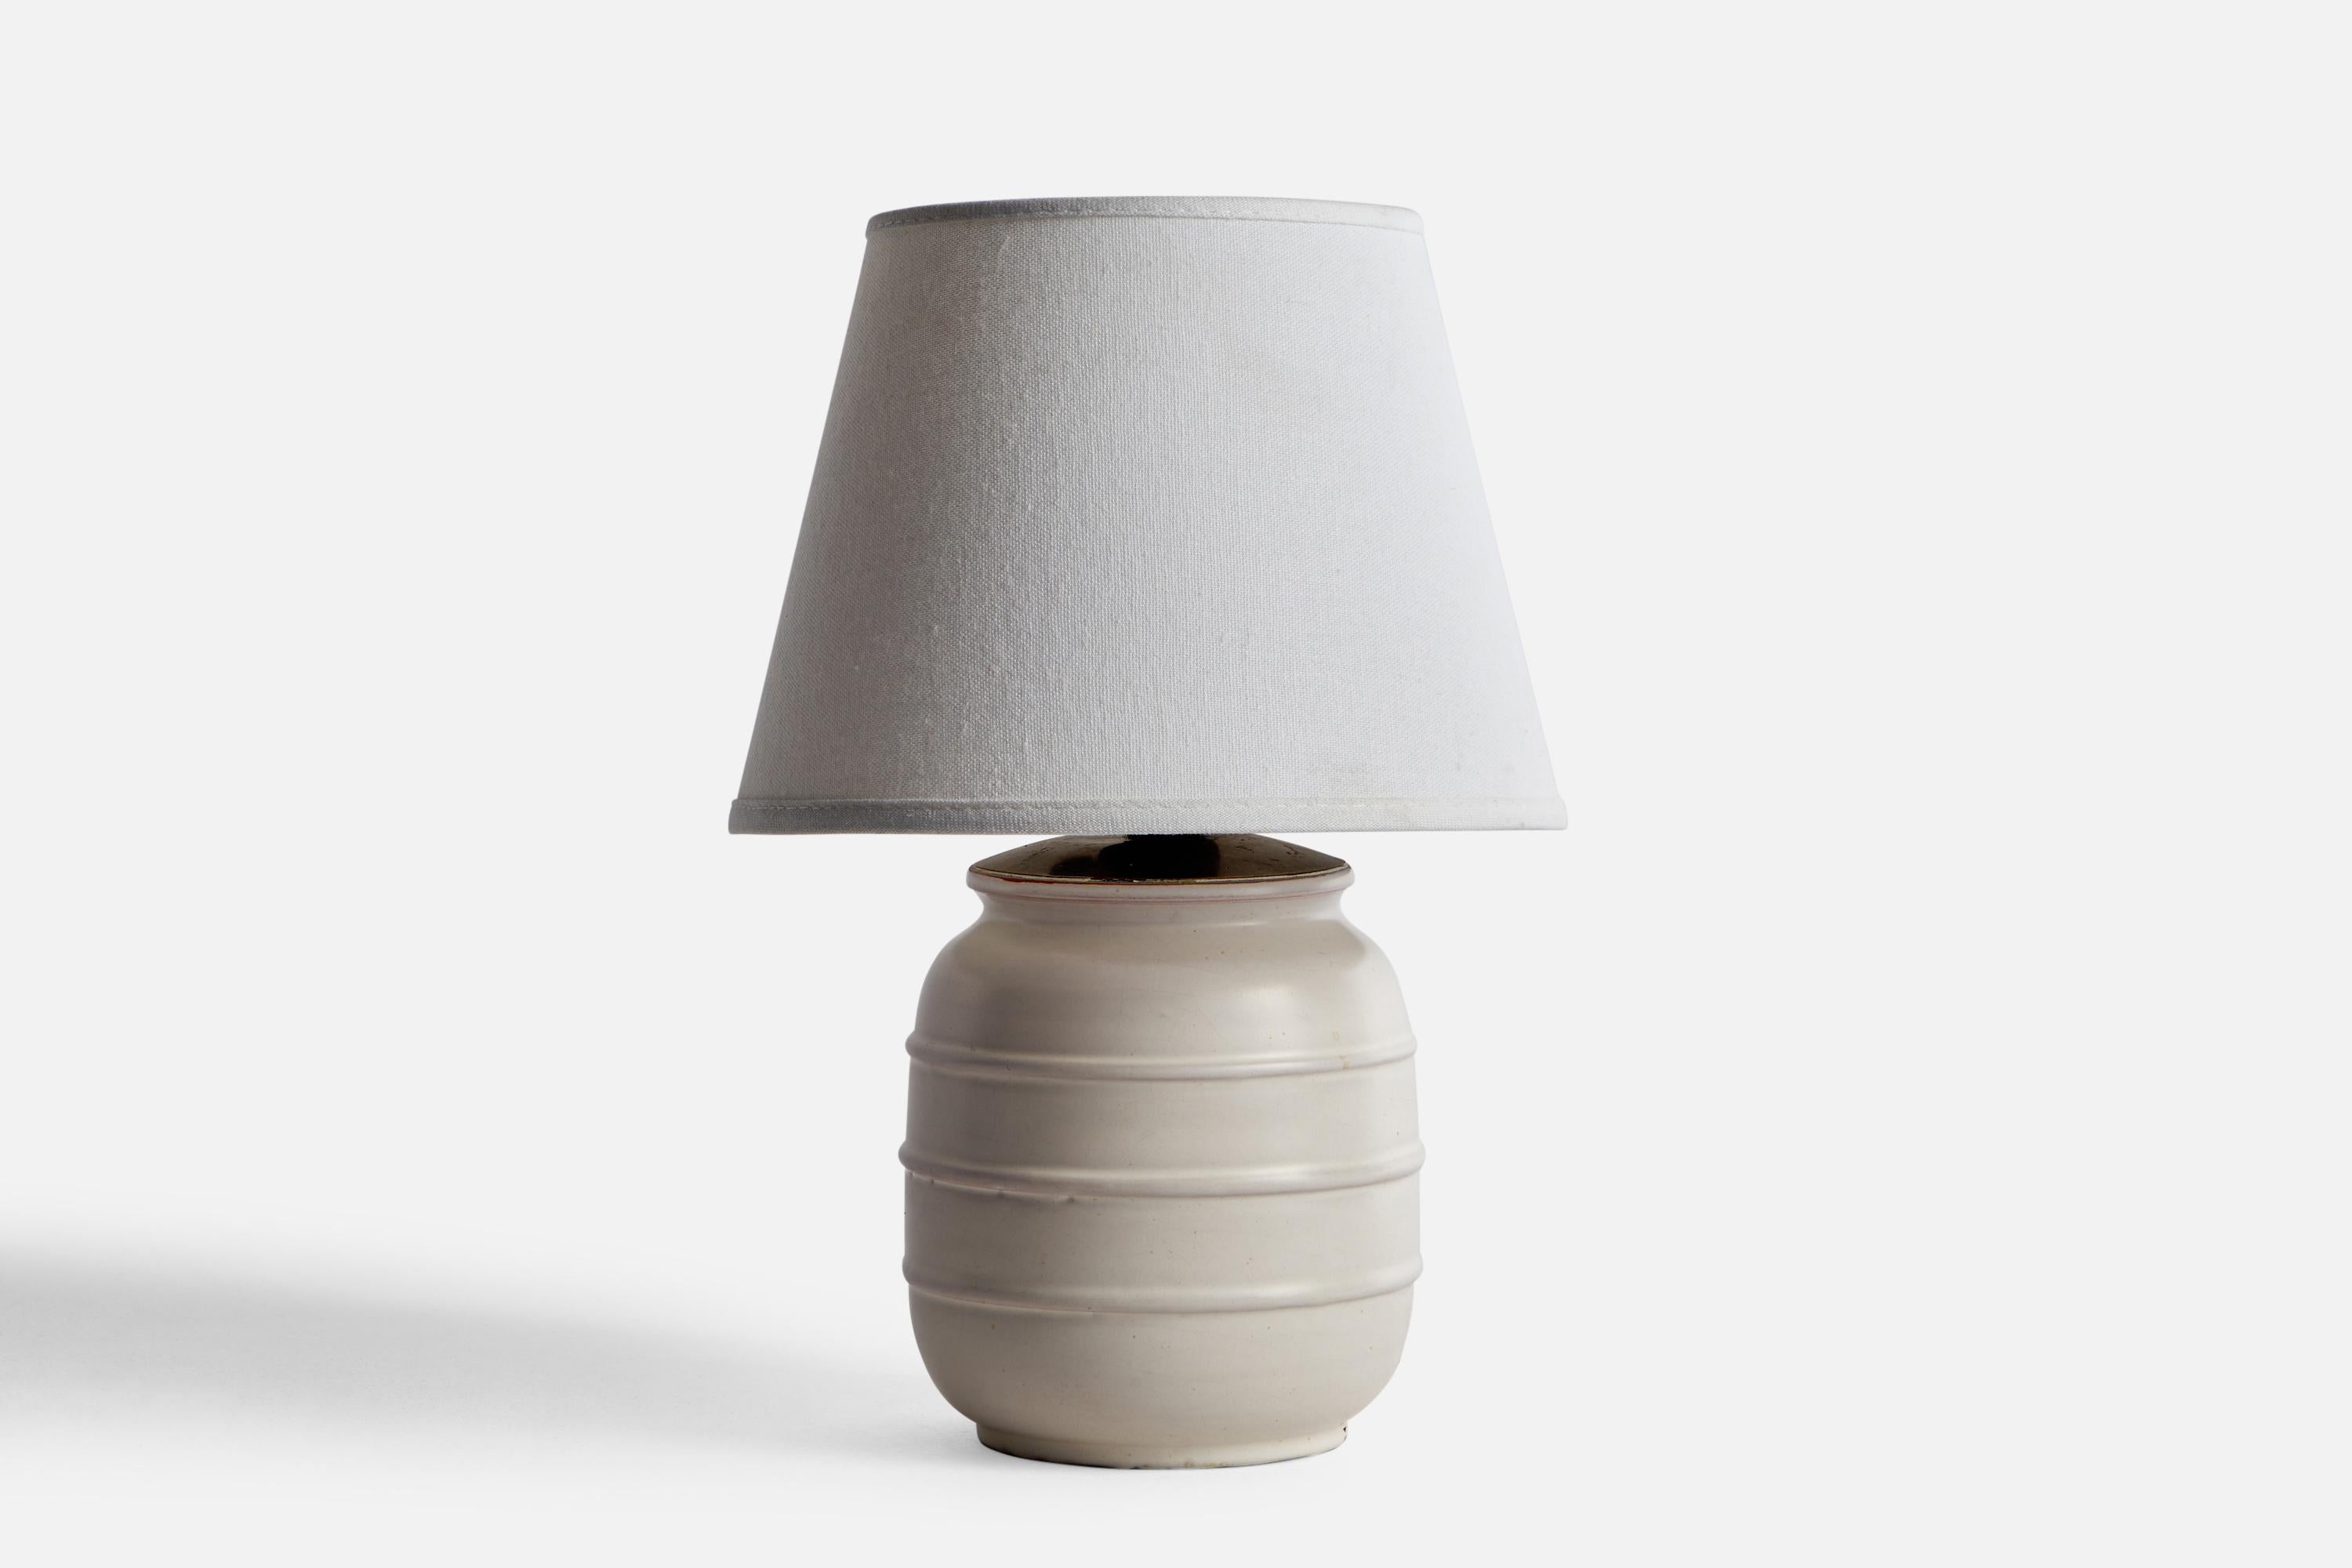 Lampe de table en céramique gris clair et laiton conçue par Jerk Werkmäster et produite par Nittsjö, Suède, vers les années 1930.

Dimensions de la lampe (pouces) : 9